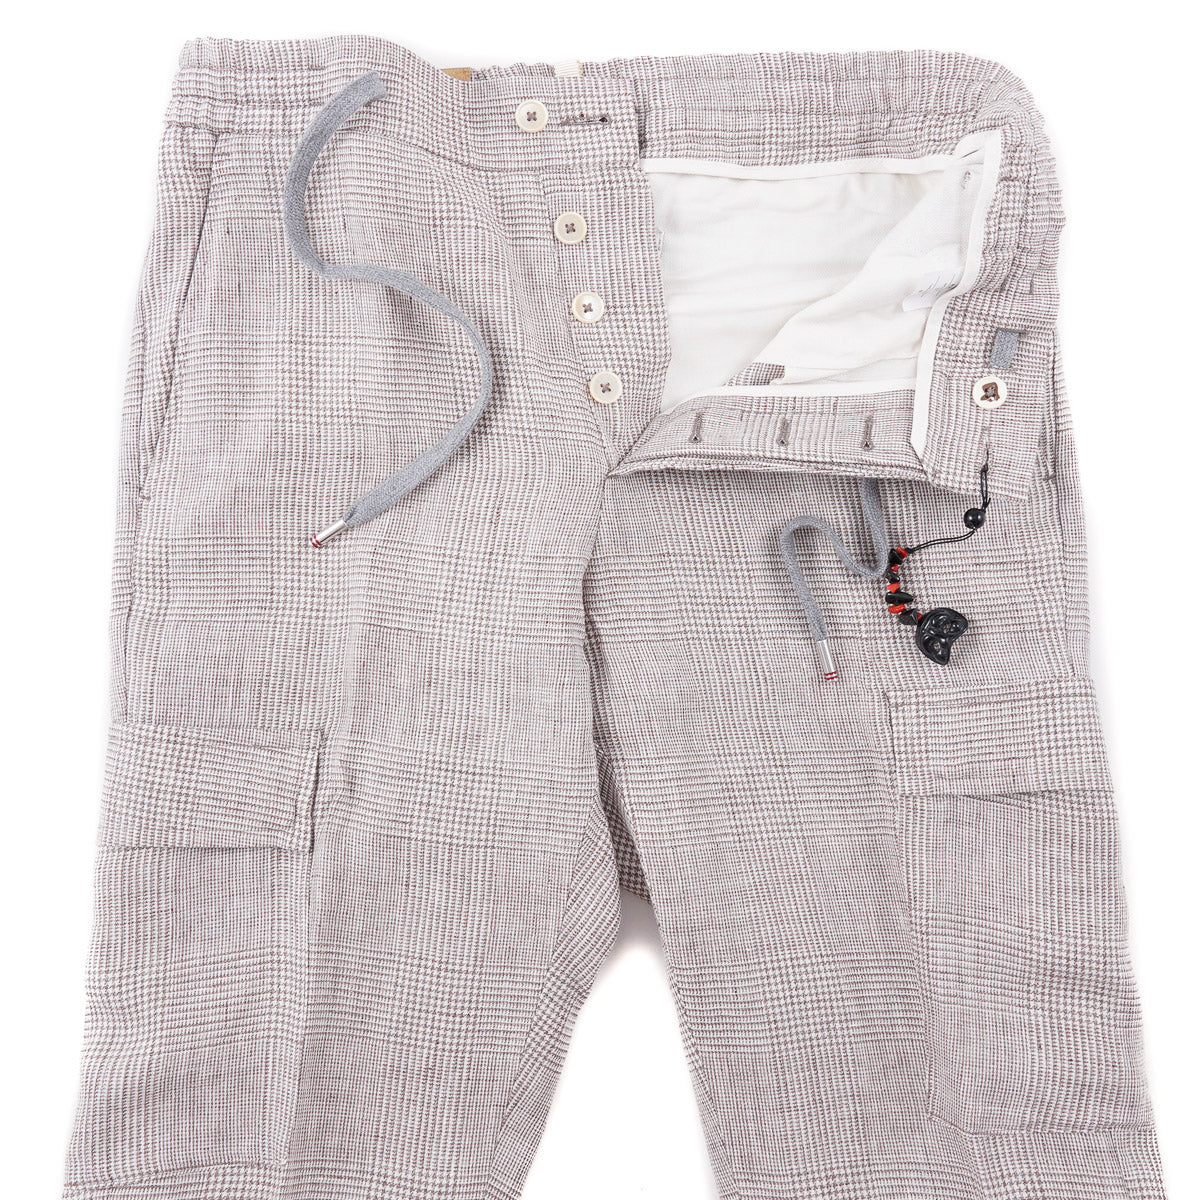 Marco Pescarolo Linen Pants with Cargo Pockets - Top Shelf Apparel